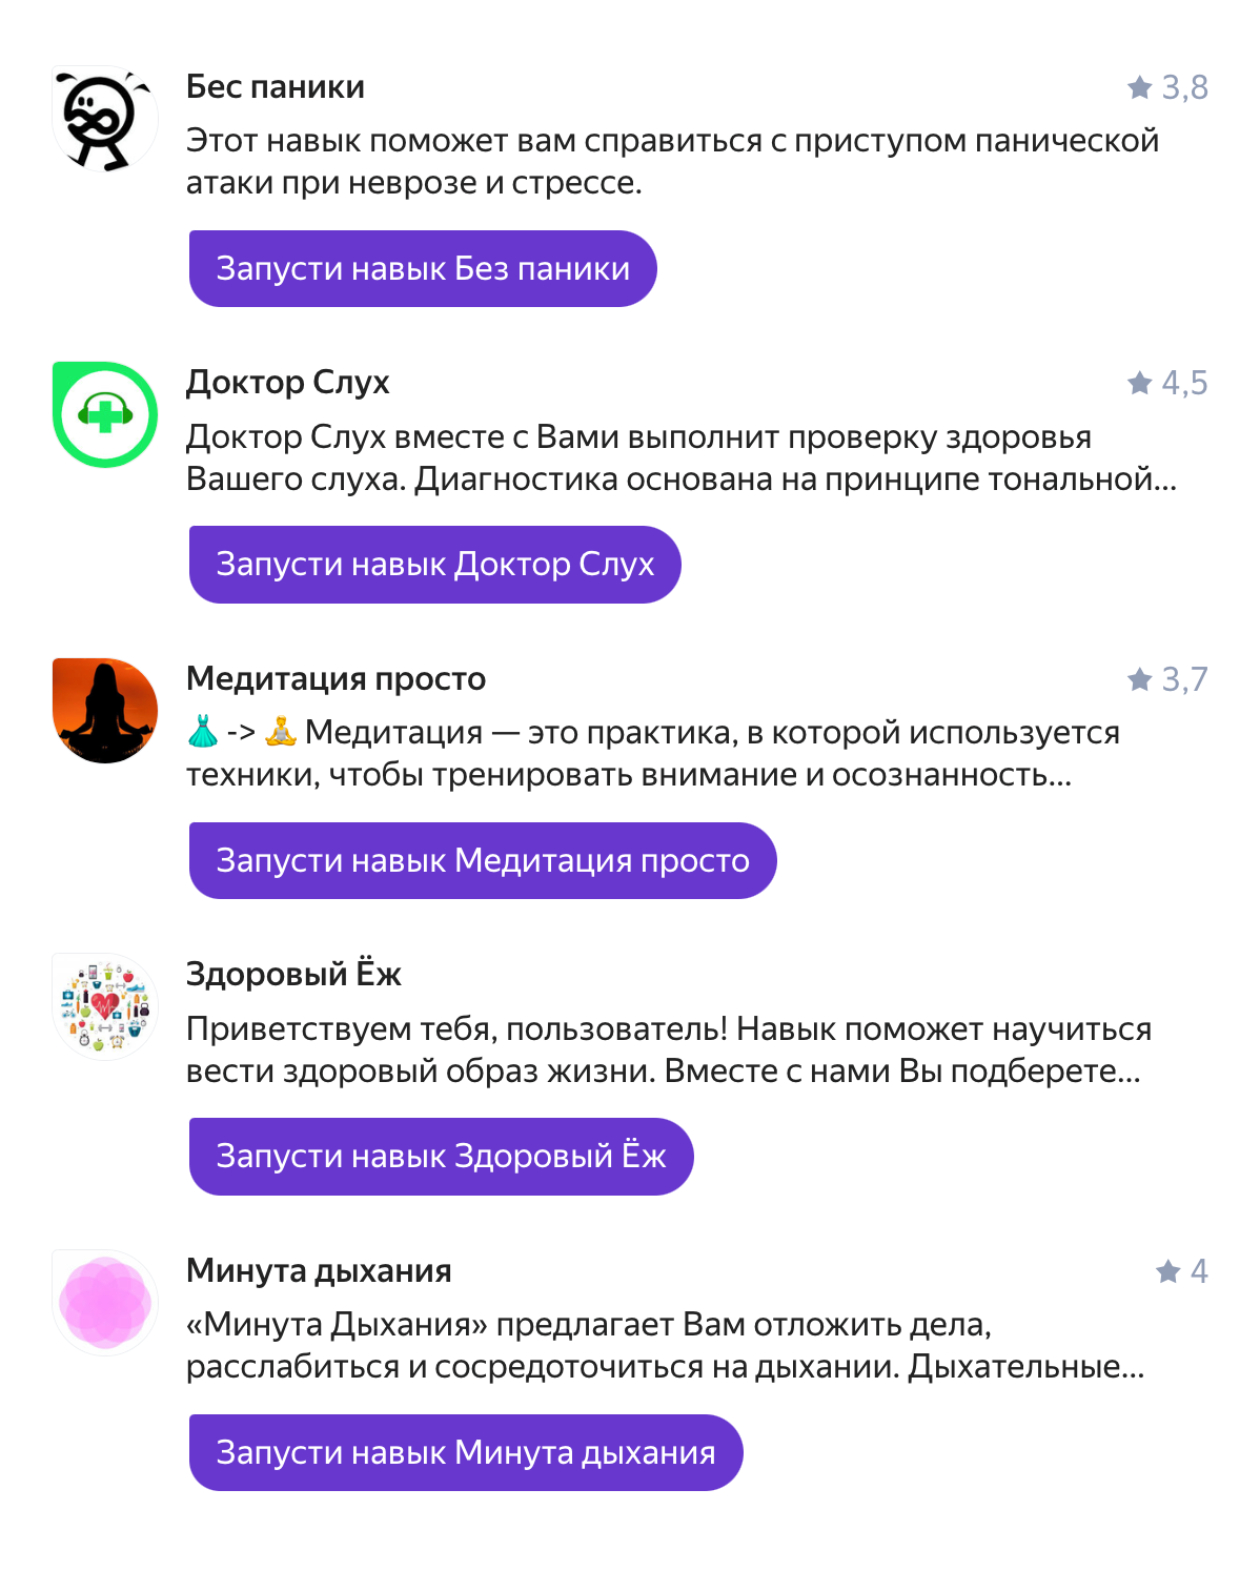 История - Яндекс Браузер для смартфонов с Android. Справка